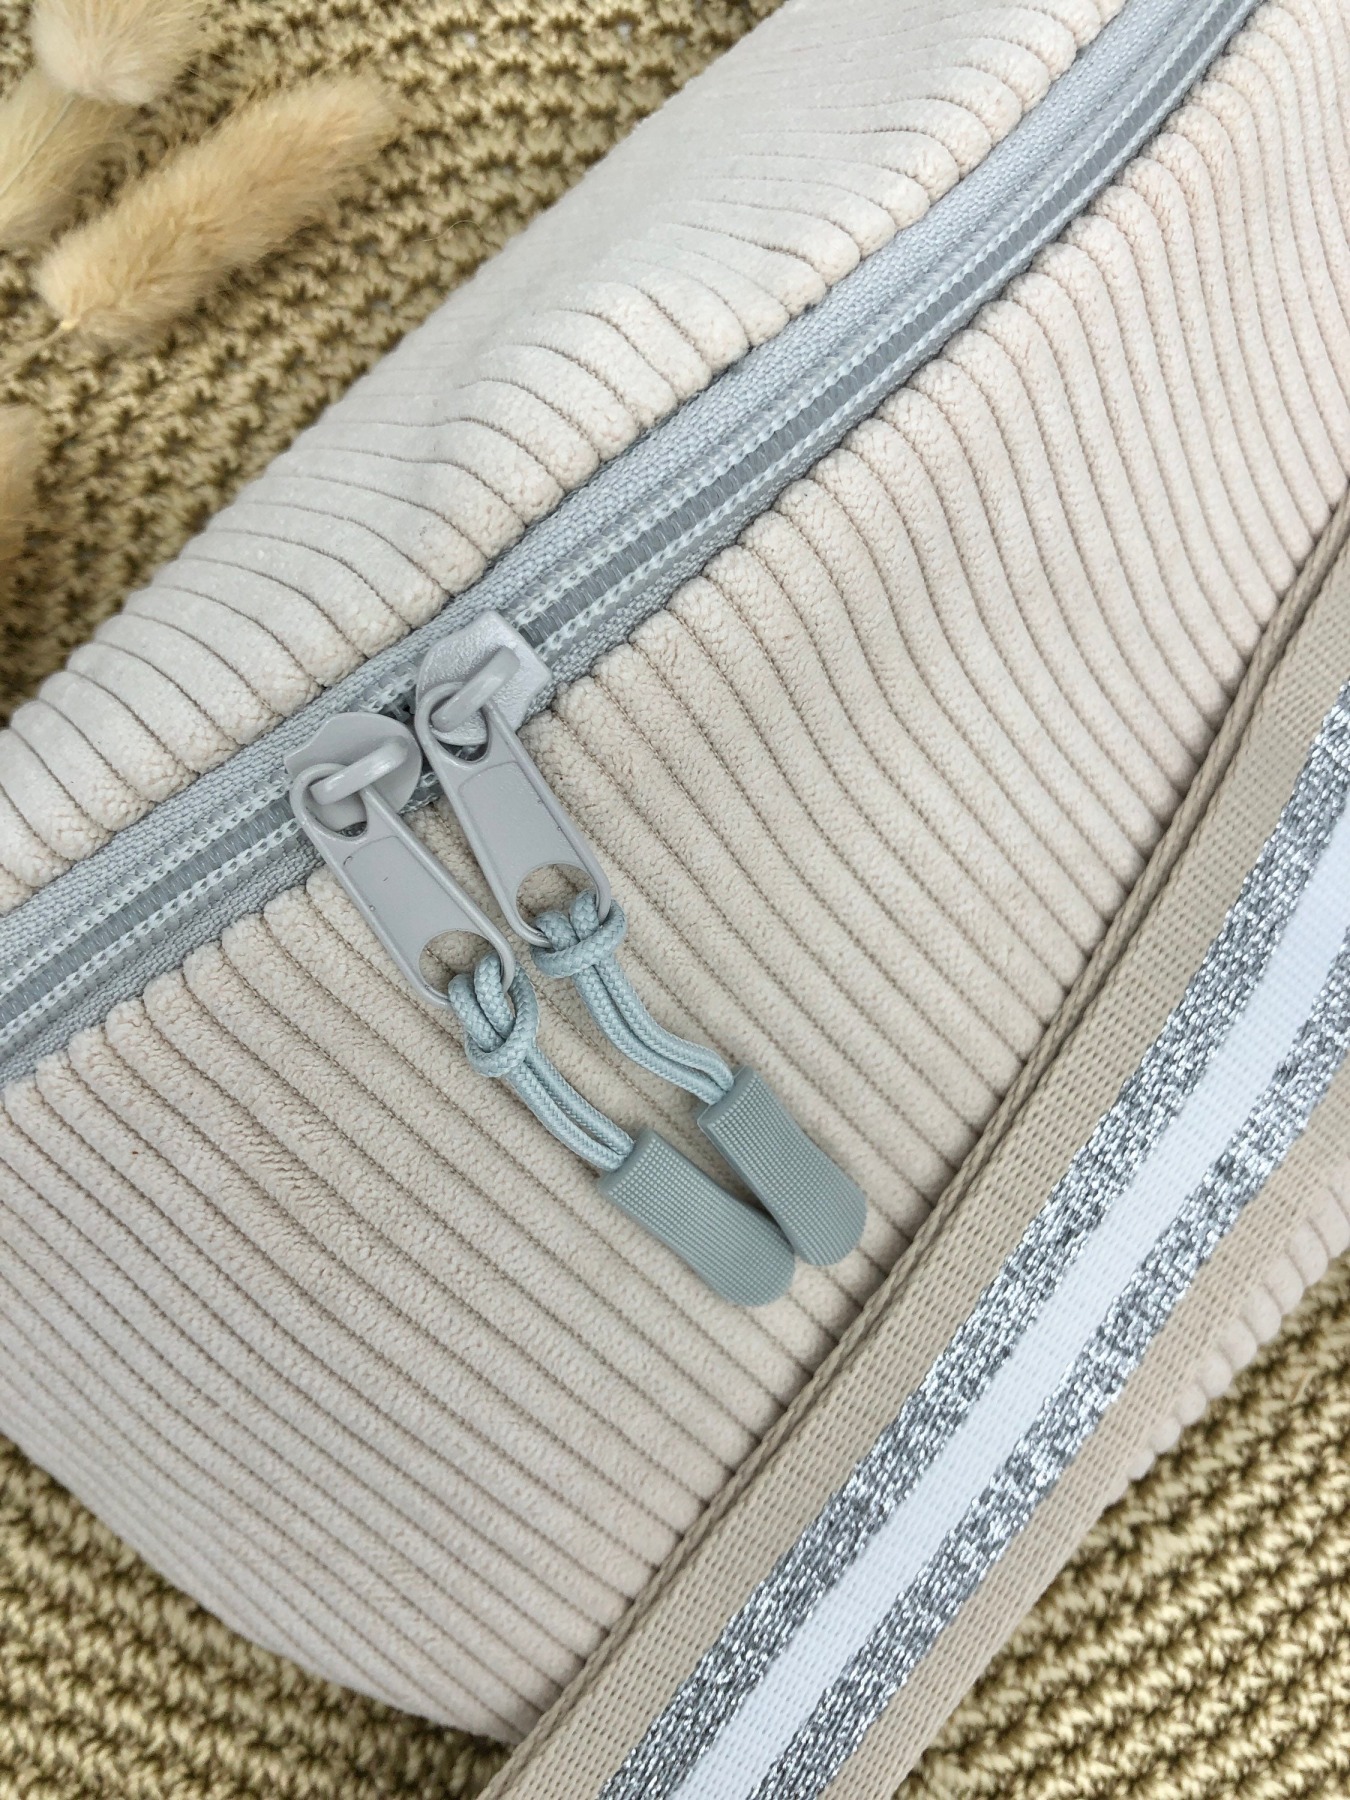 Bauchtasche XL Crossbag Cord cremeweiß mit Taschengurt in beige weiß silber Tasche Hipbag leicht